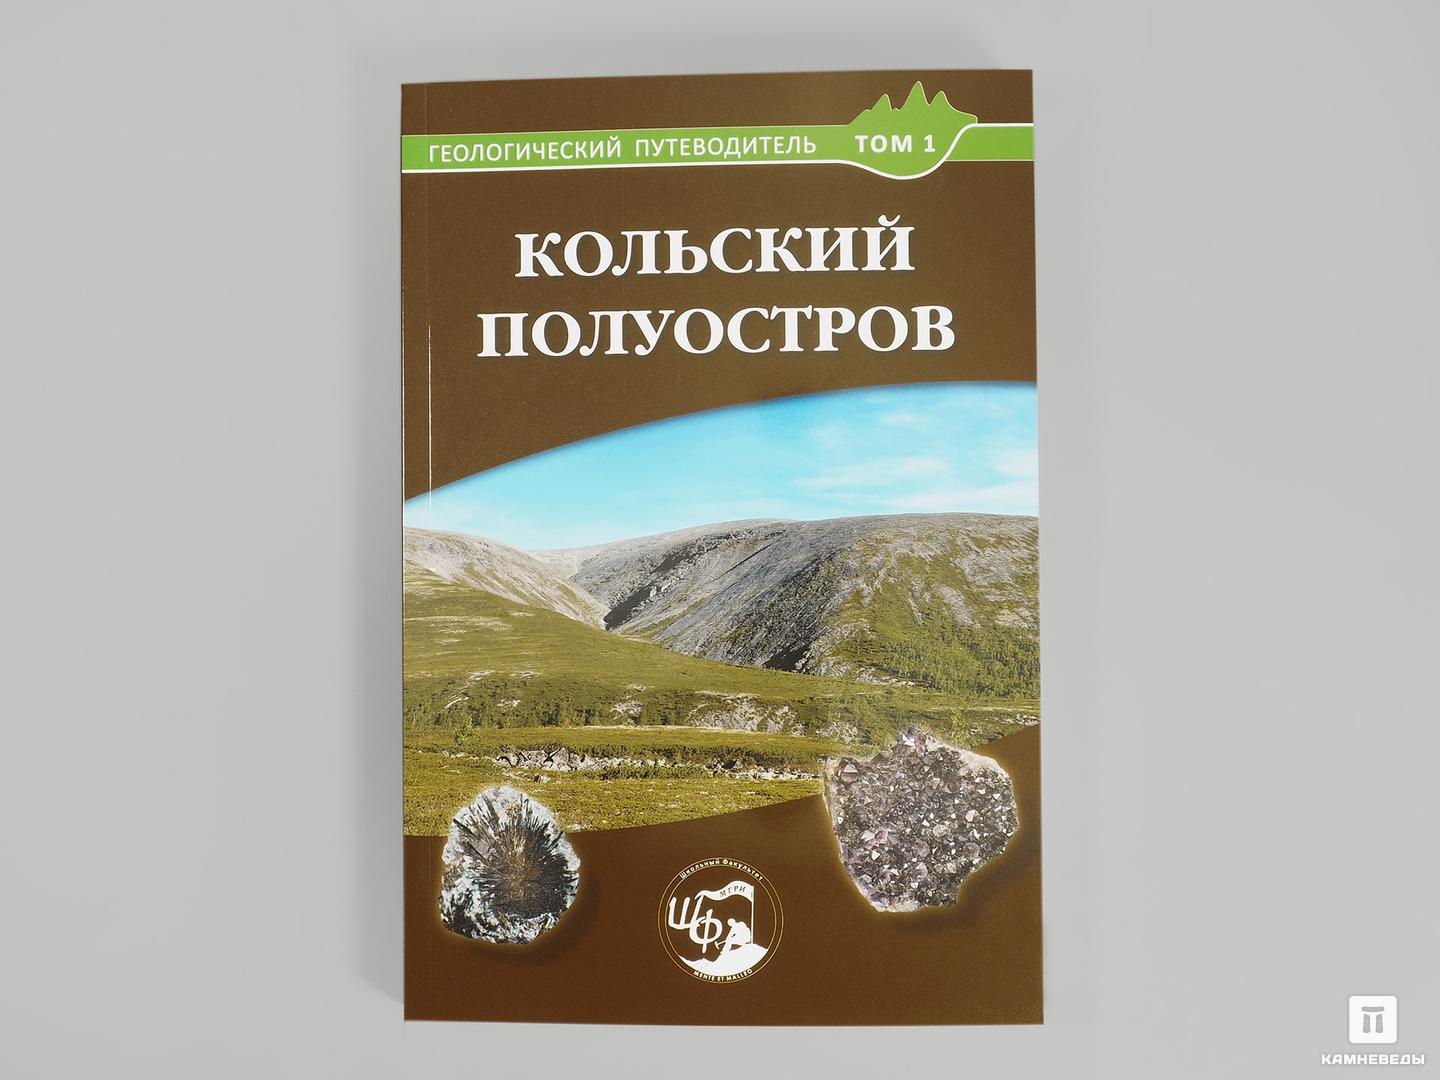 Книга: «Кольский полуостров. Геологический путеводитель, Том 1» путеводитель петропавловская крепость